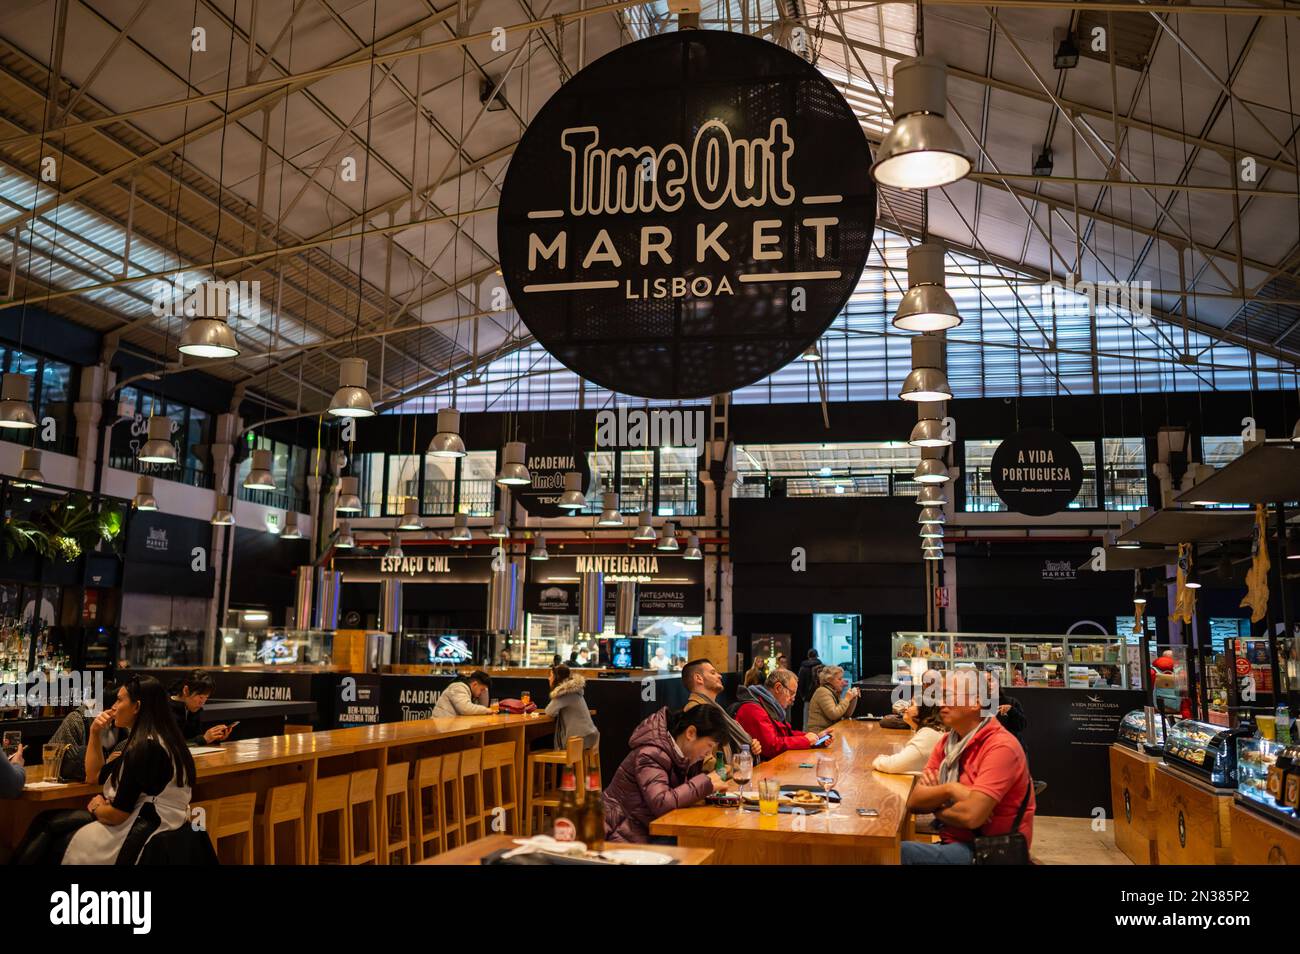 Time Out Market Lisboa, restaurante situado en el Mercado da Ribeira en Cais do Sodre en Lisboa, Portugal. Foto de stock